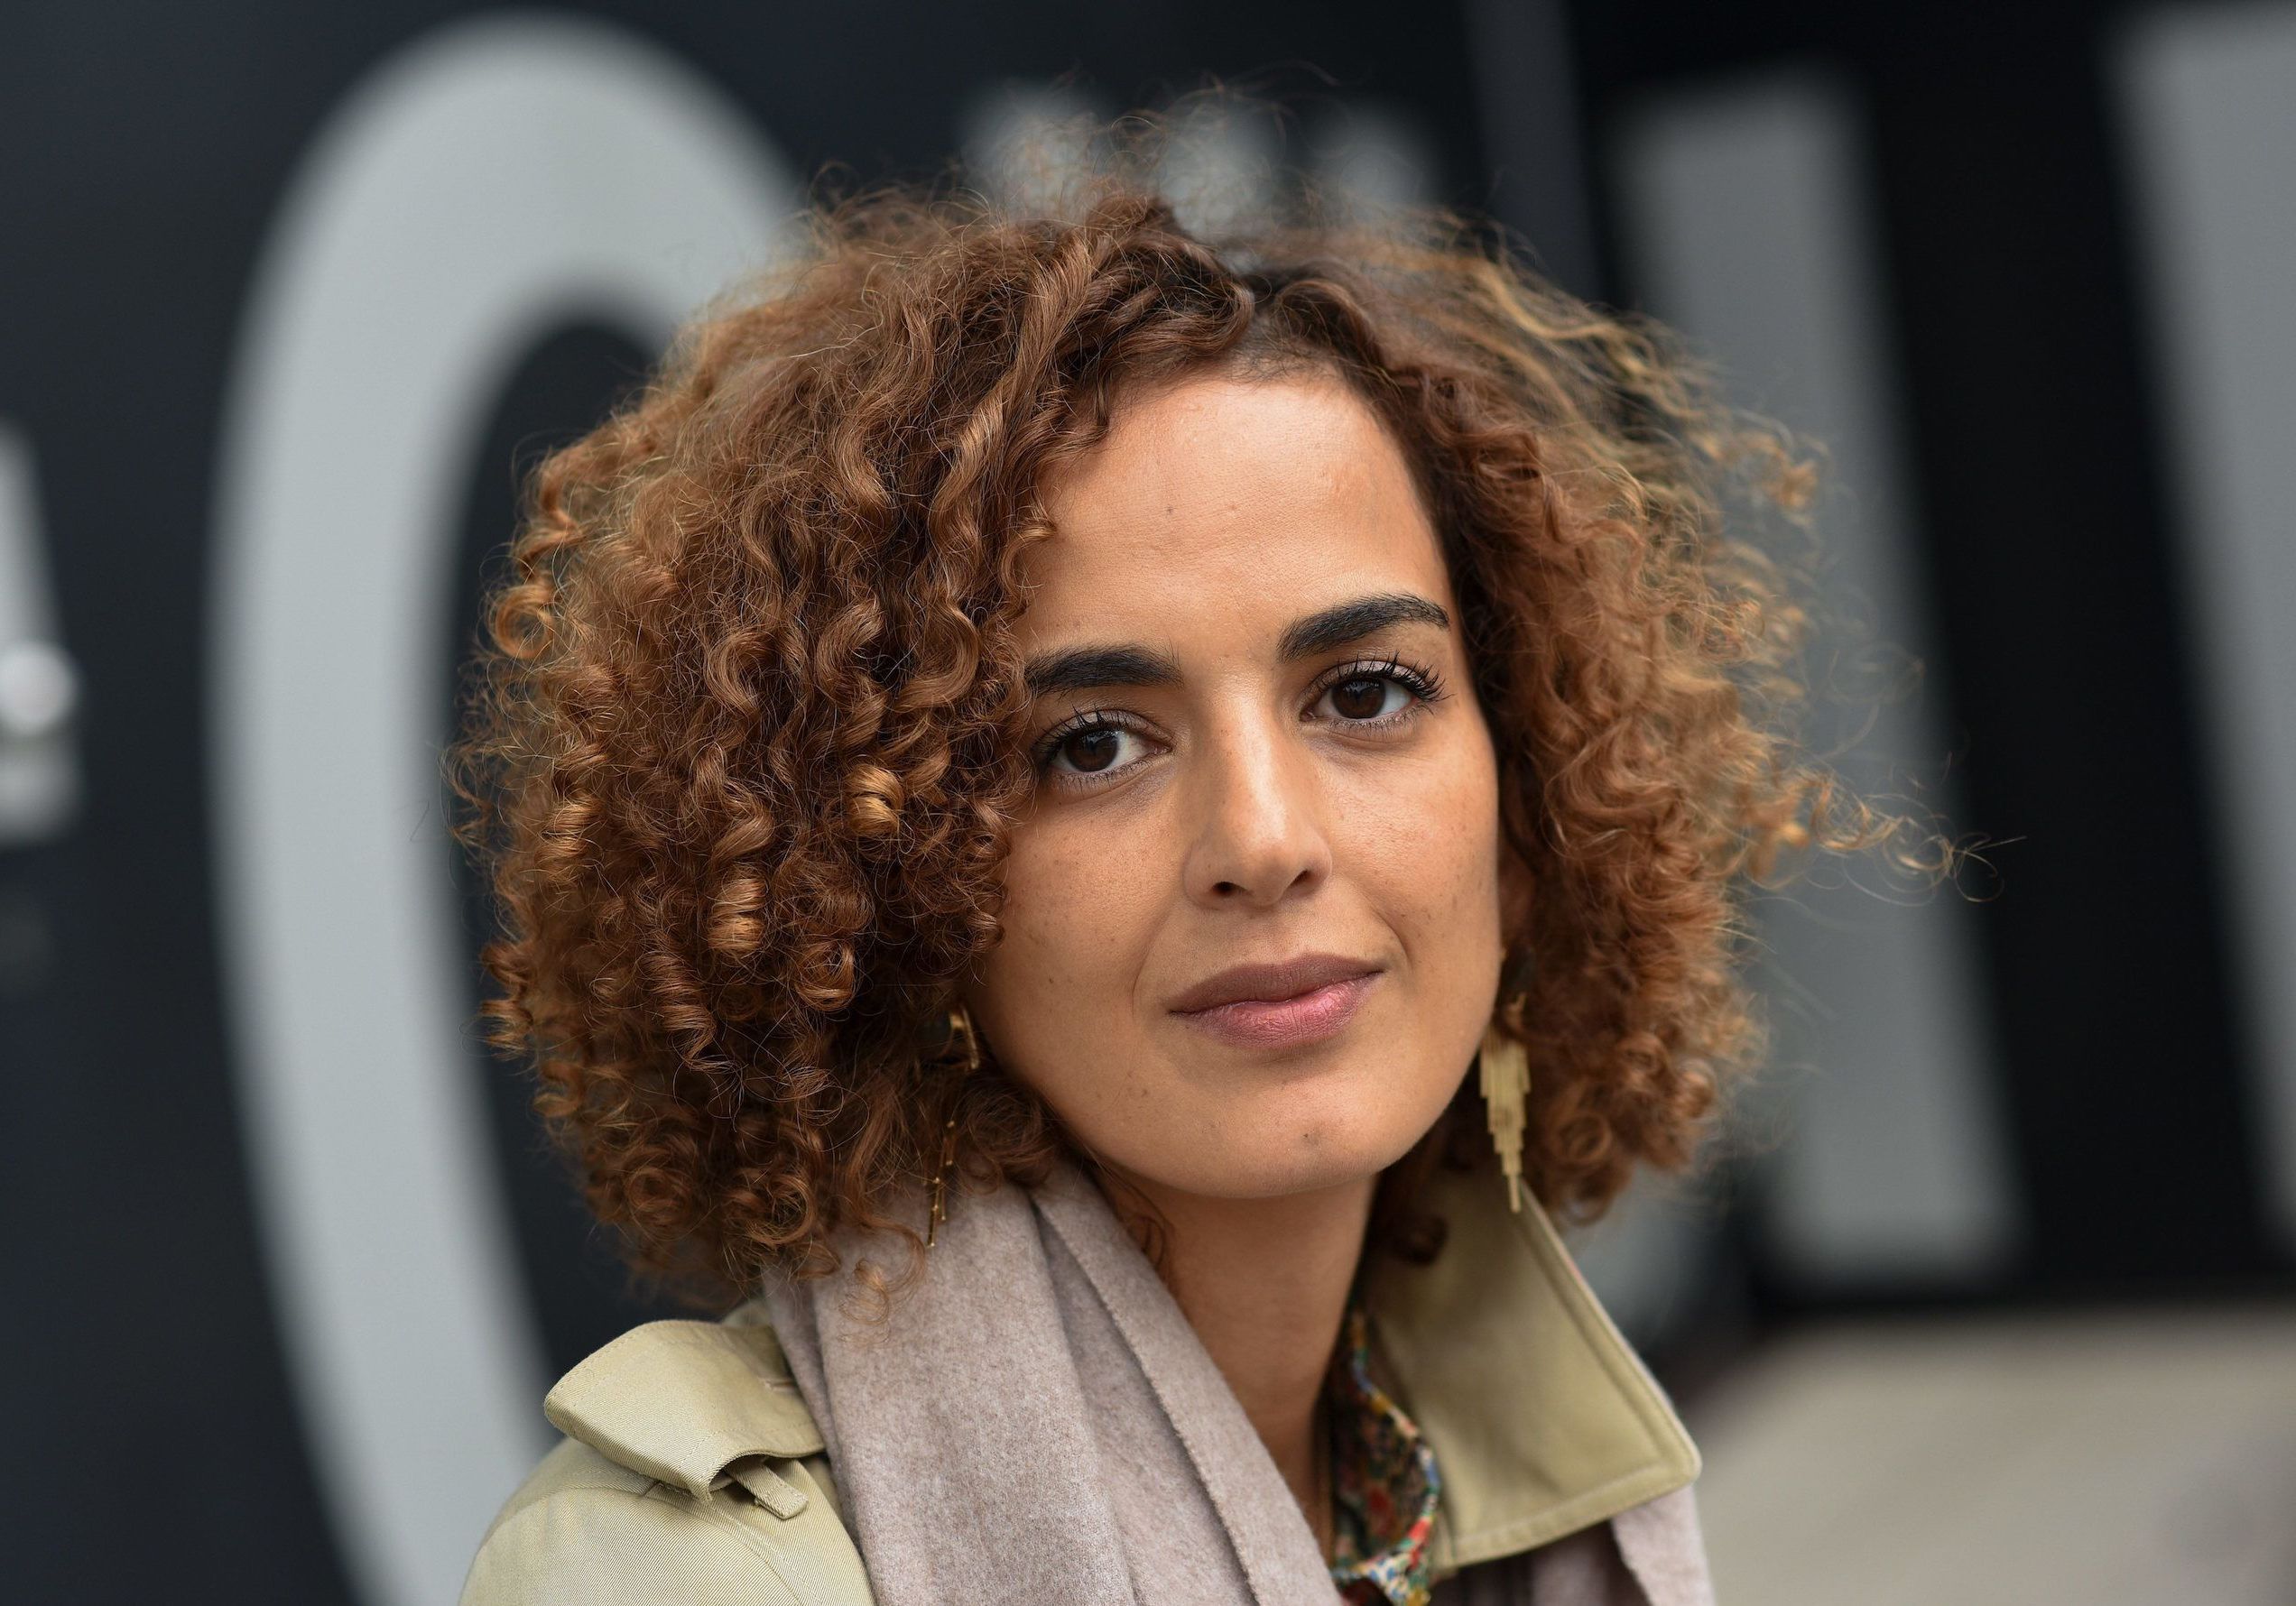 Sexualité Le Manifeste De Leïla Slimani Pour Les Femmes Hors La Loi Au Maroc Elle